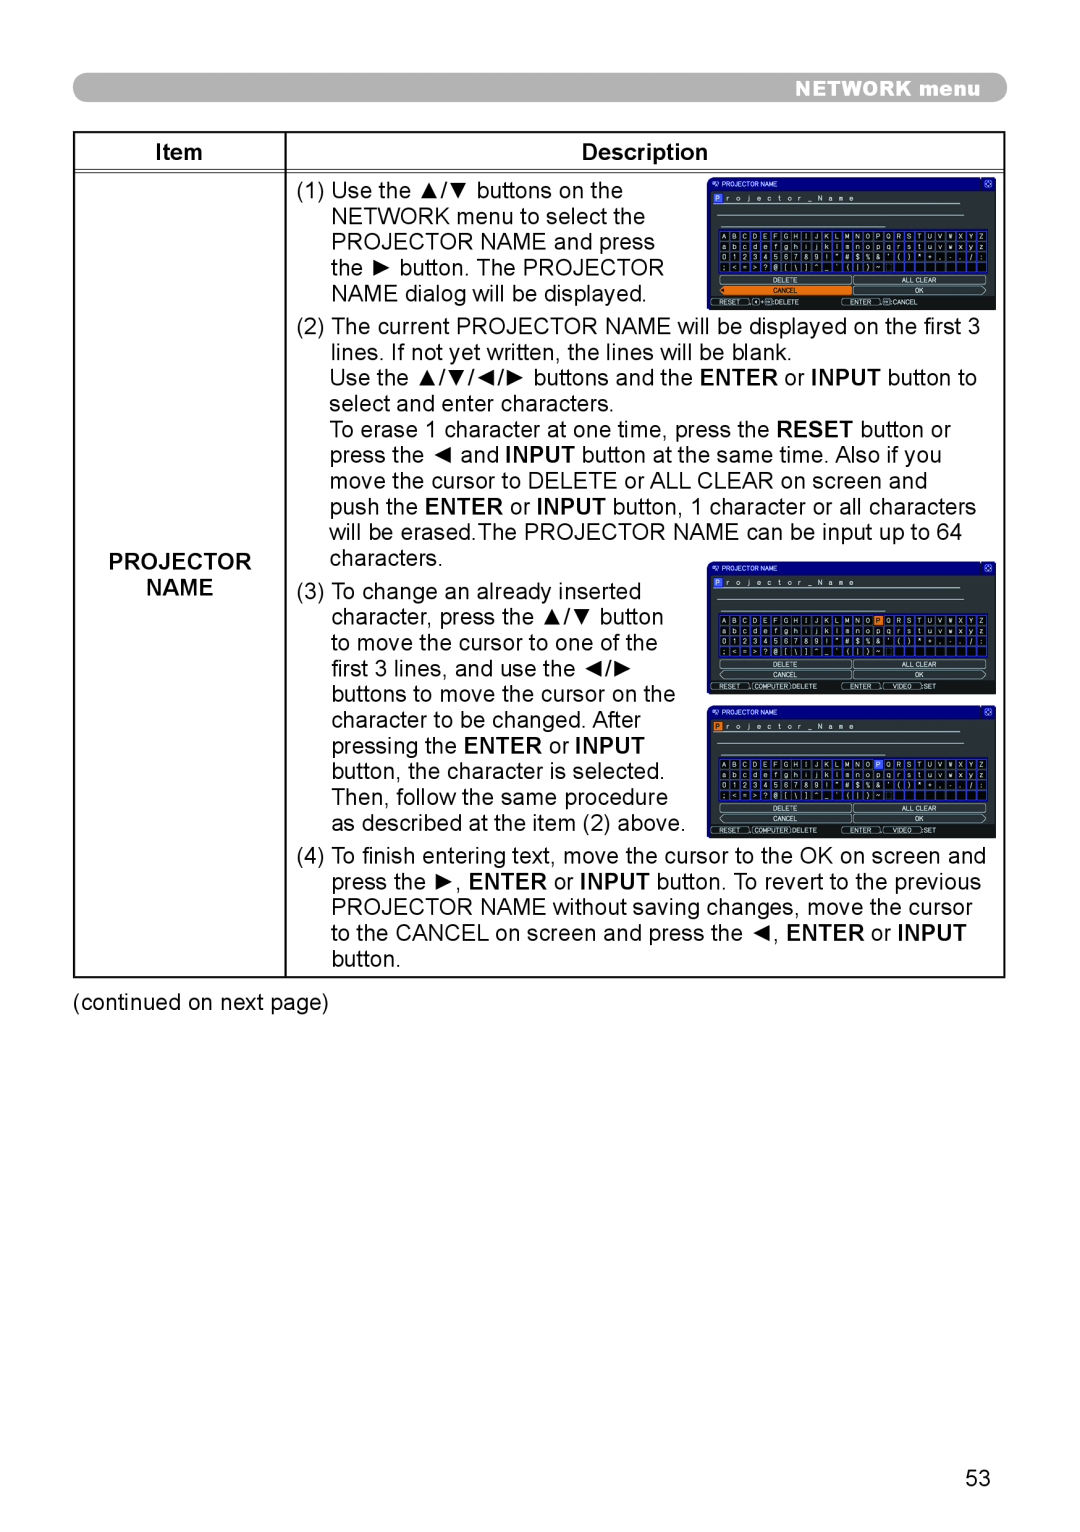 Dukane 8755J-RJ, 8920H-RJ, 8919H-RJ user manual Description, Projector, Name 